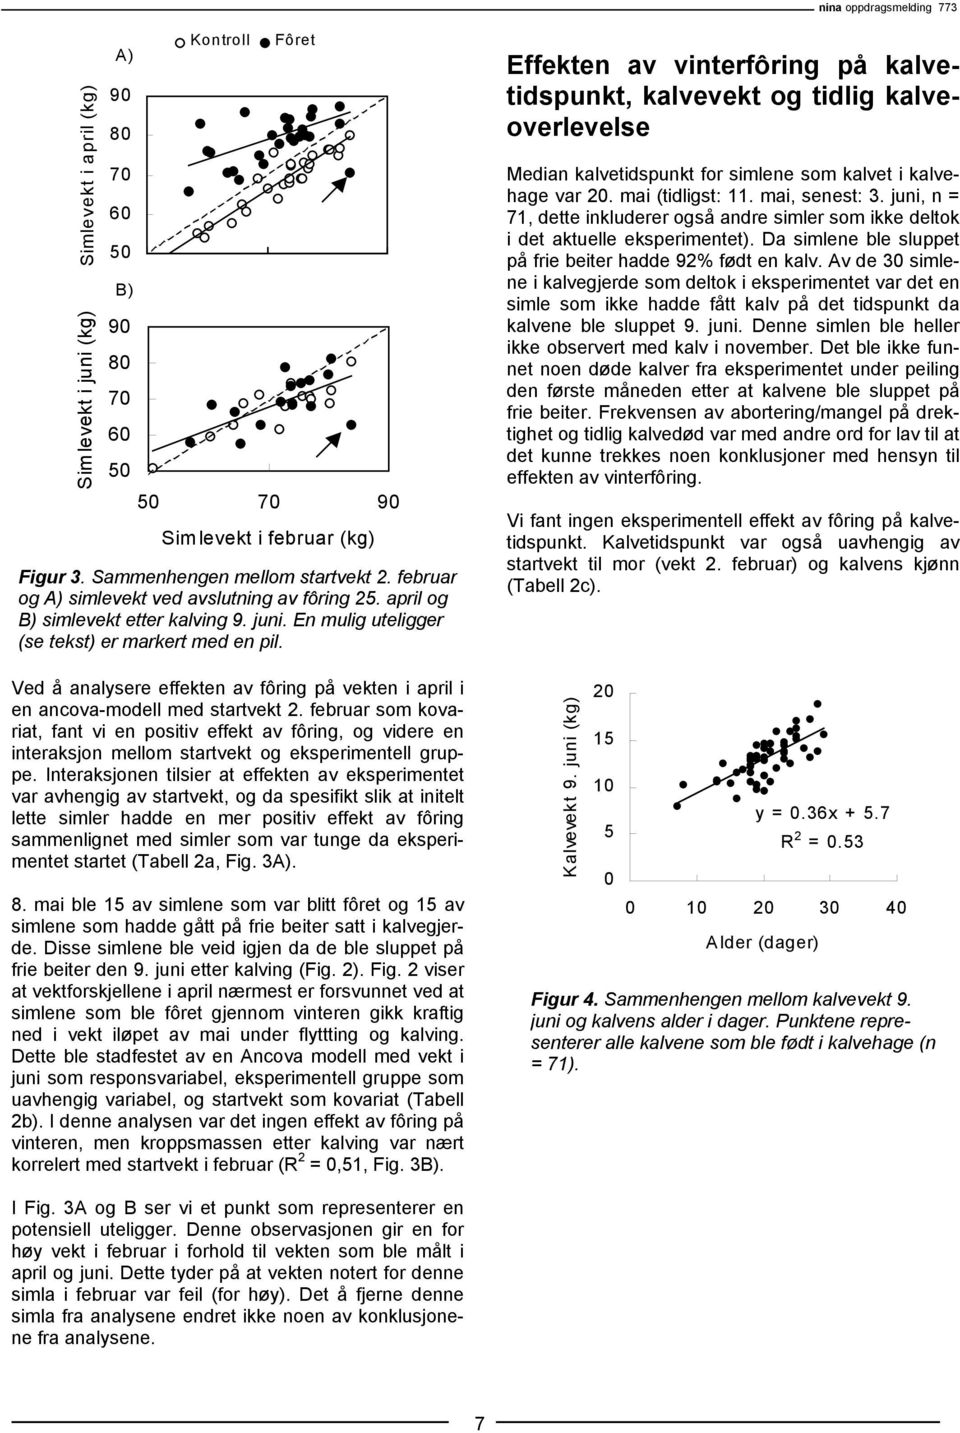 Ved å analysere effekten av fôring på vekten i april i en ancova-modell med startvekt 2.